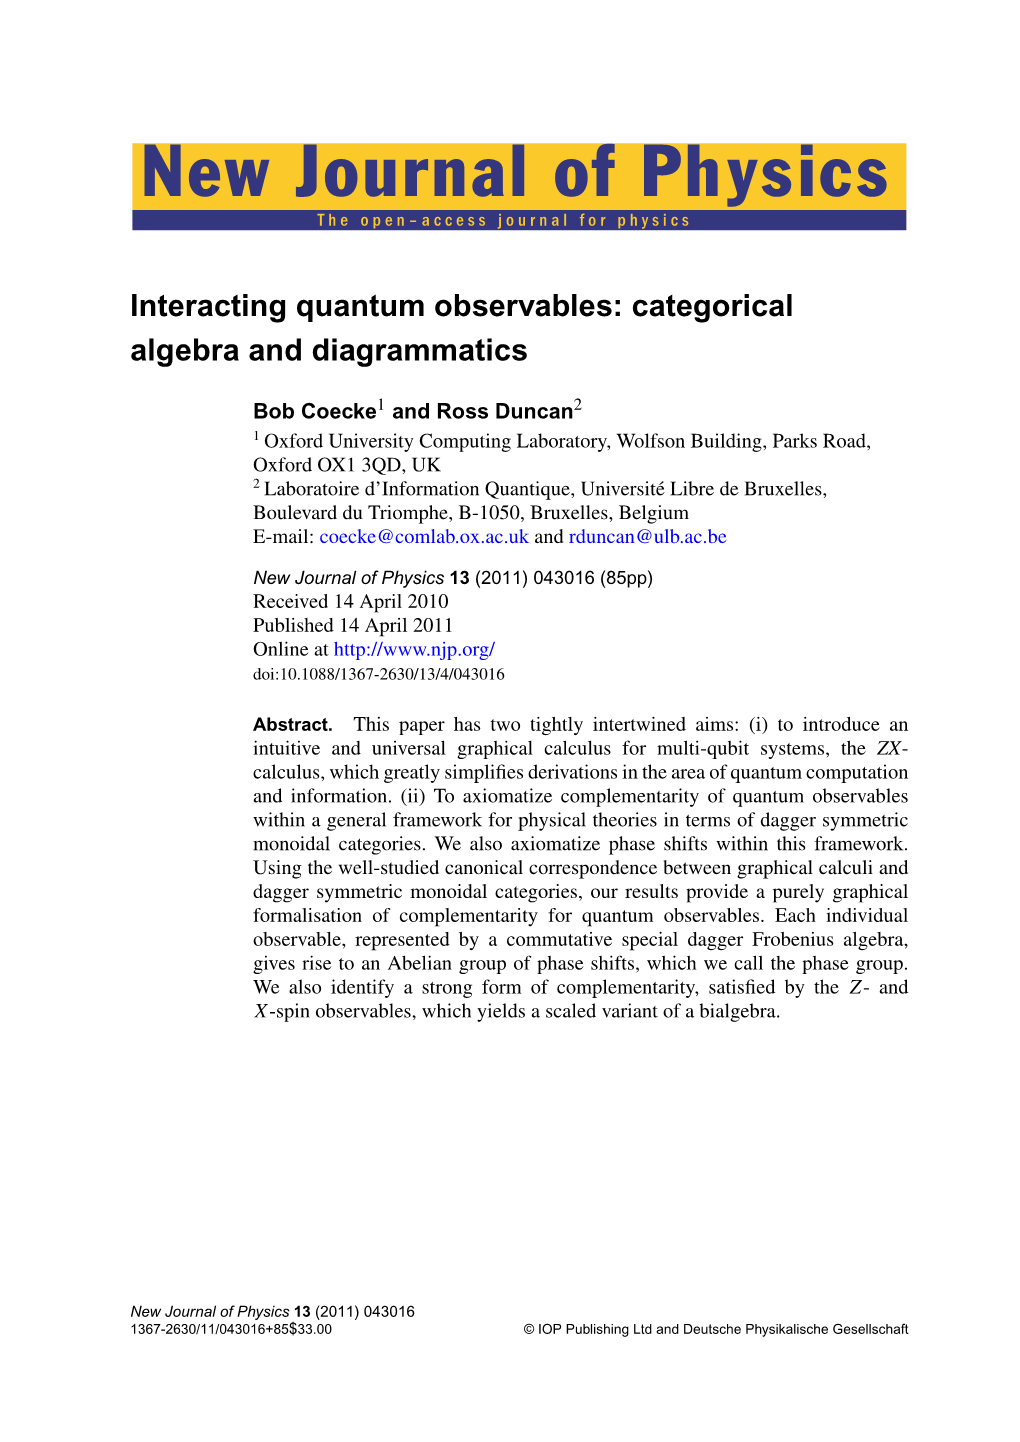 Interacting Quantum Observables: Categorical Algebra and Diagrammatics